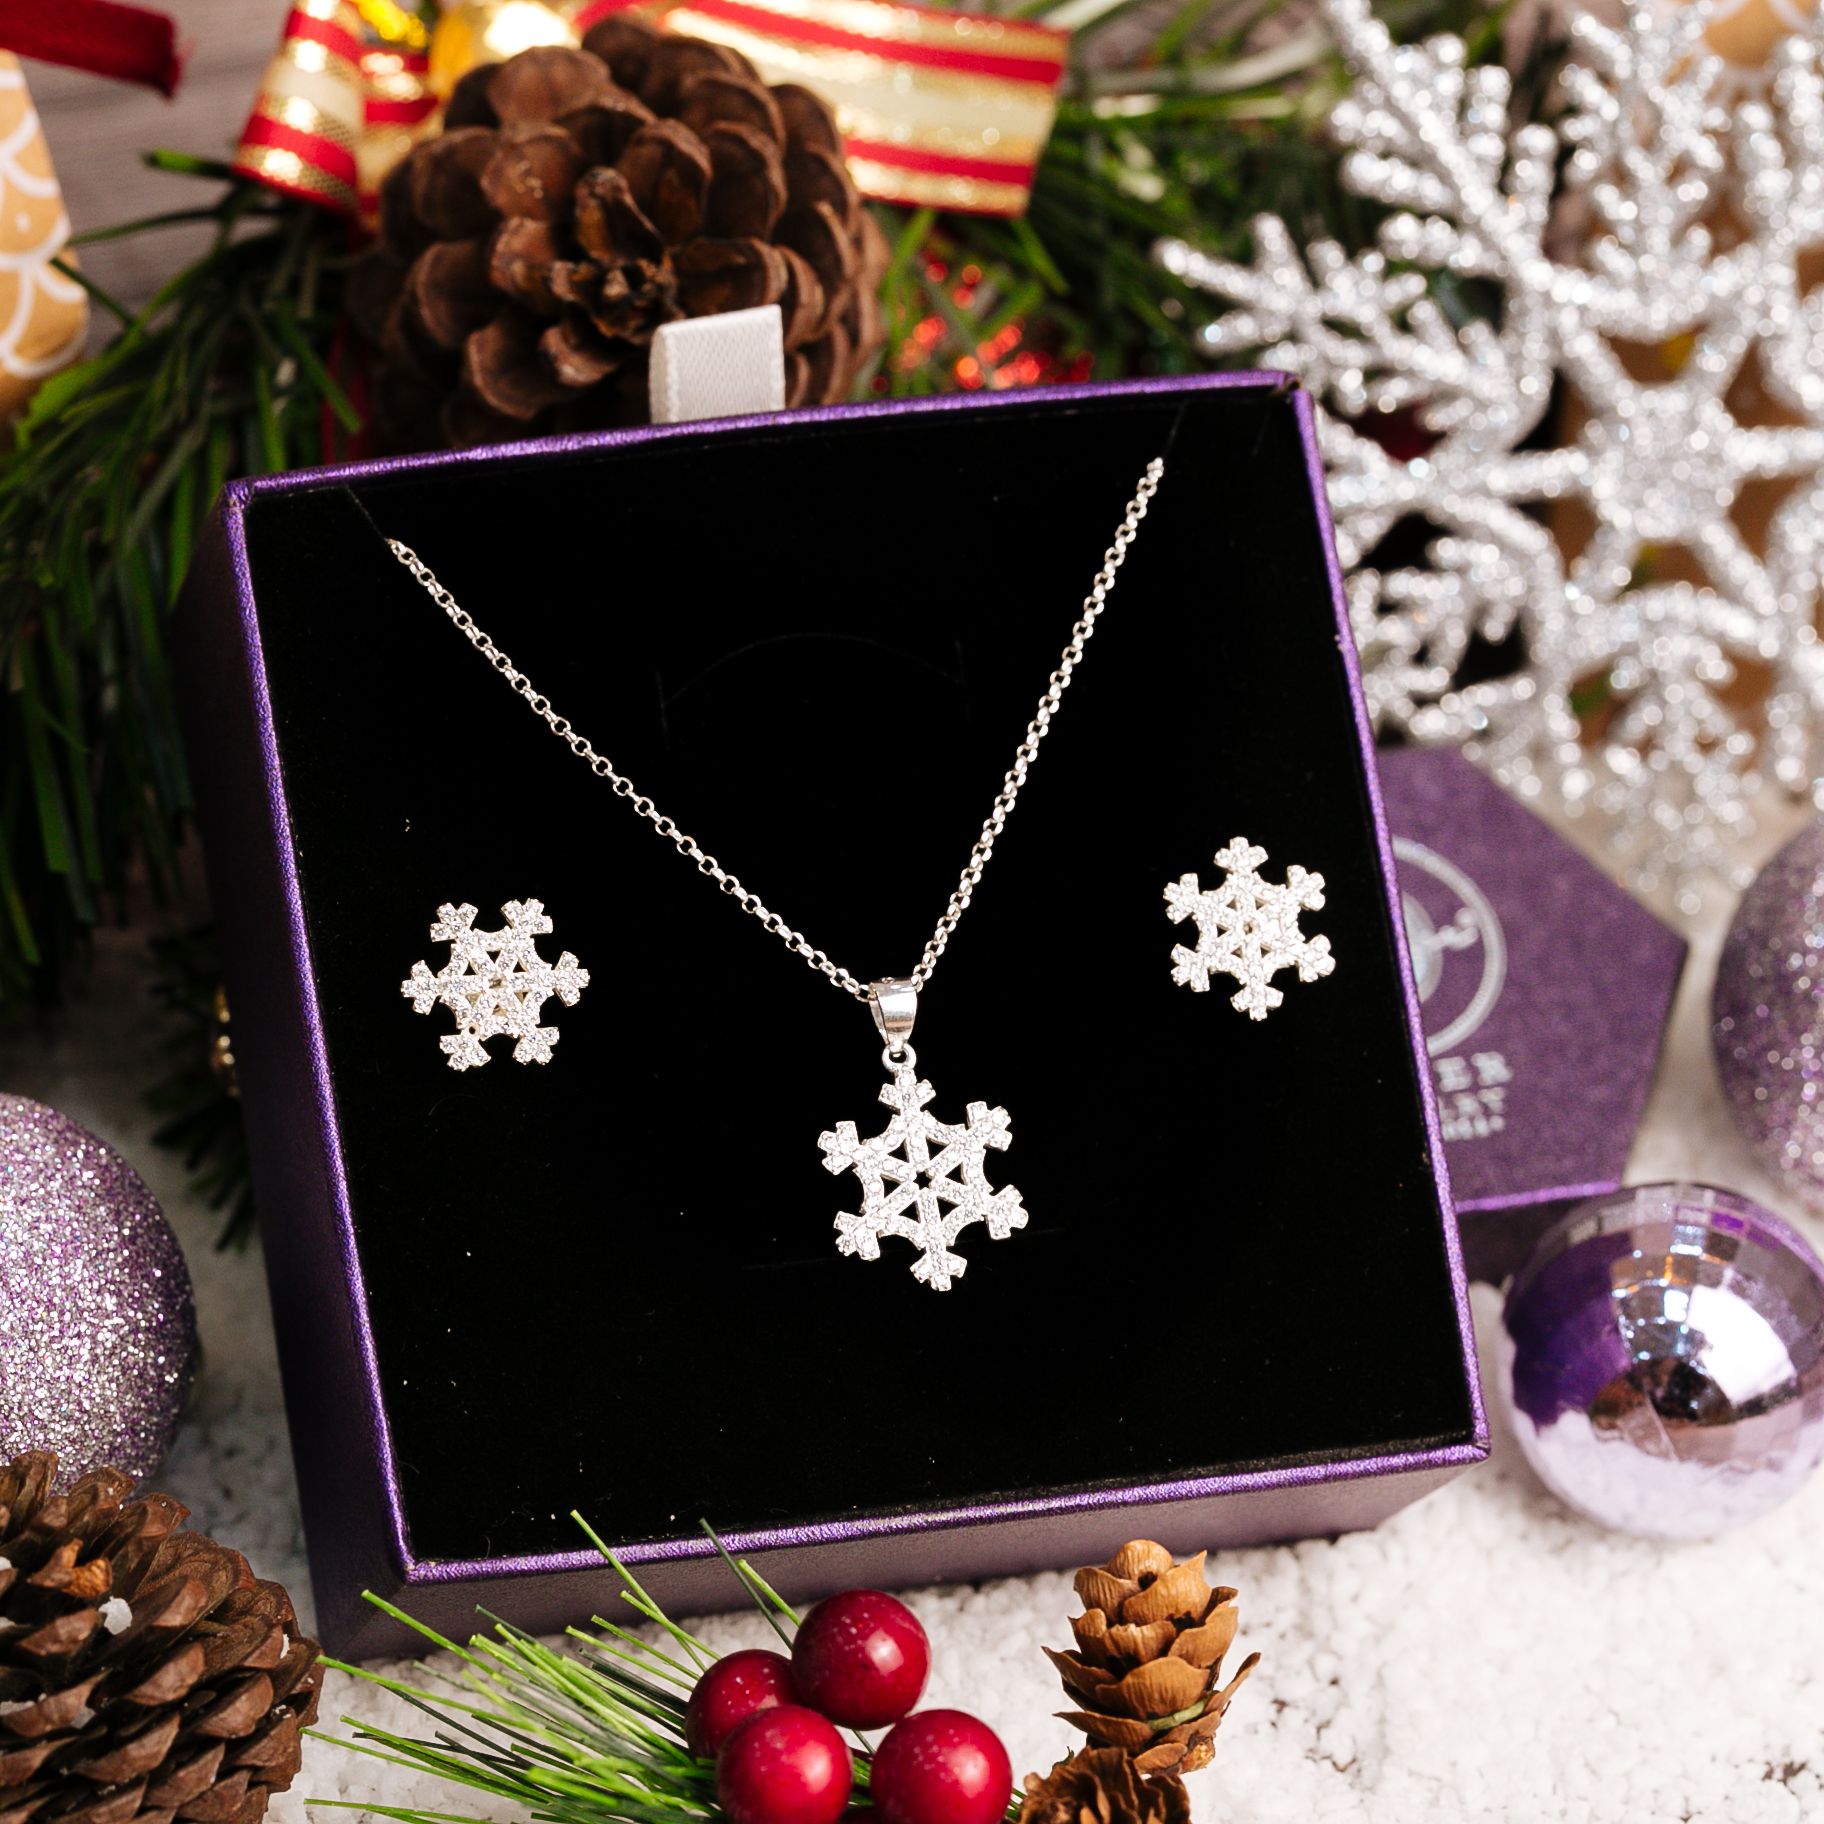  Snowflake Christmas Gift Jewelry Set - Bộ Trang Sức Hoa Tuyết Đính Đá CZ Lấp Lánh - Quà Tặng Giáng Sinh 